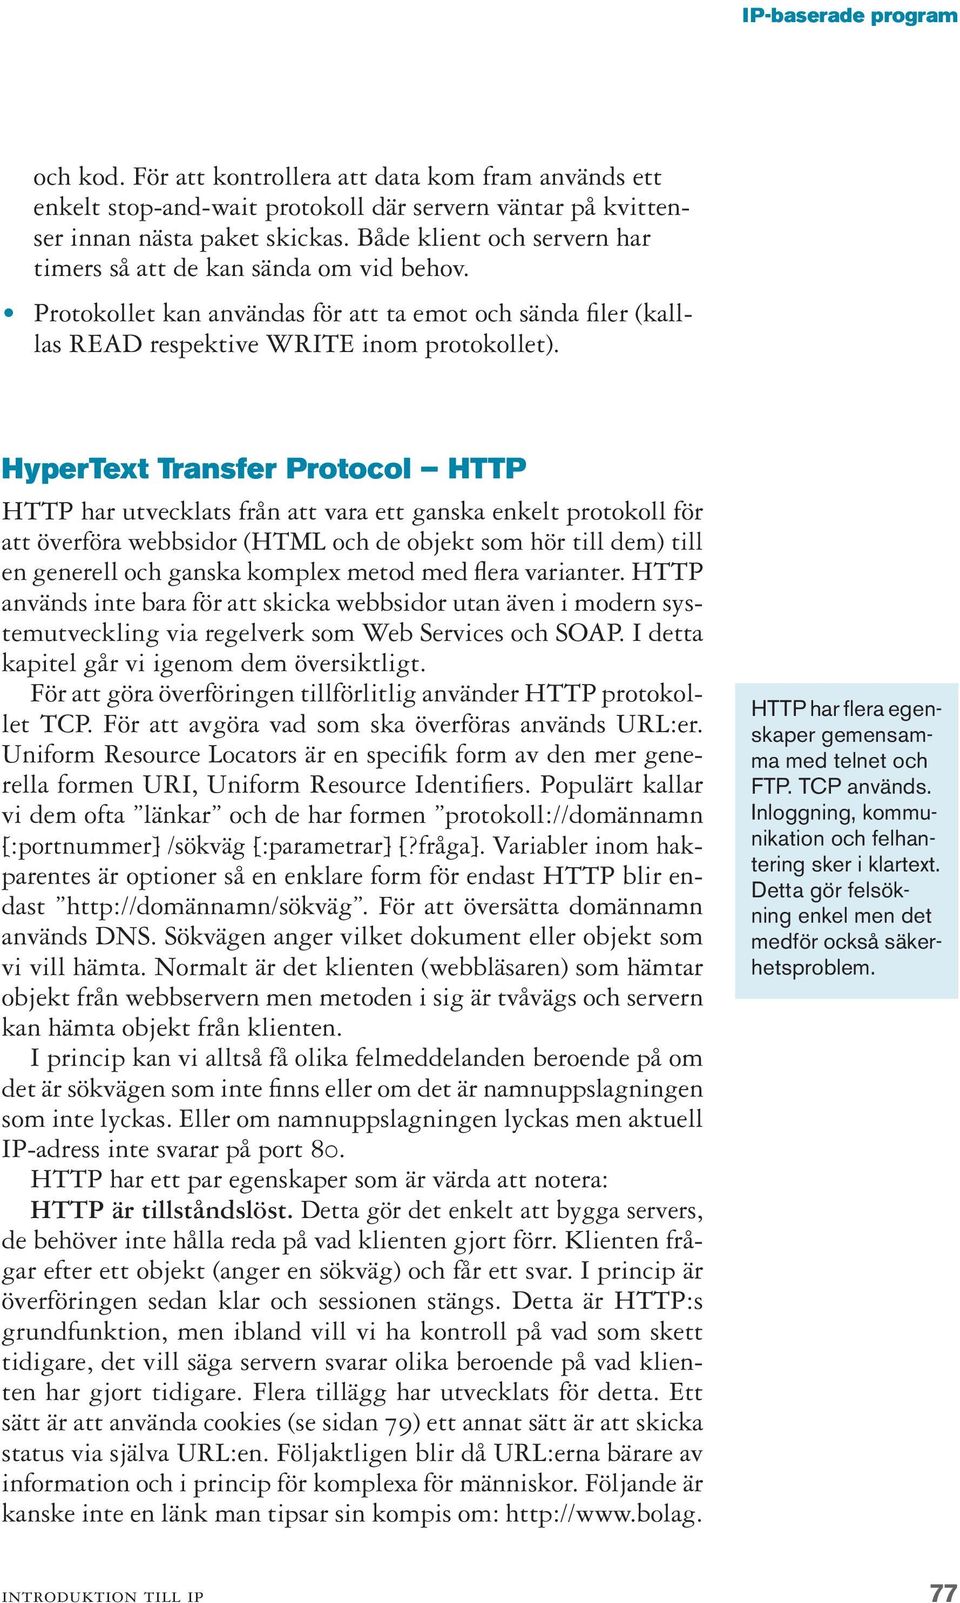 HyperText Transfer Protocol HTTP HTTP har utvecklats från att vara ett ganska enkelt protokoll för att överföra webbsidor (HTML och de objekt som hör till dem) till en generell och ganska komplex